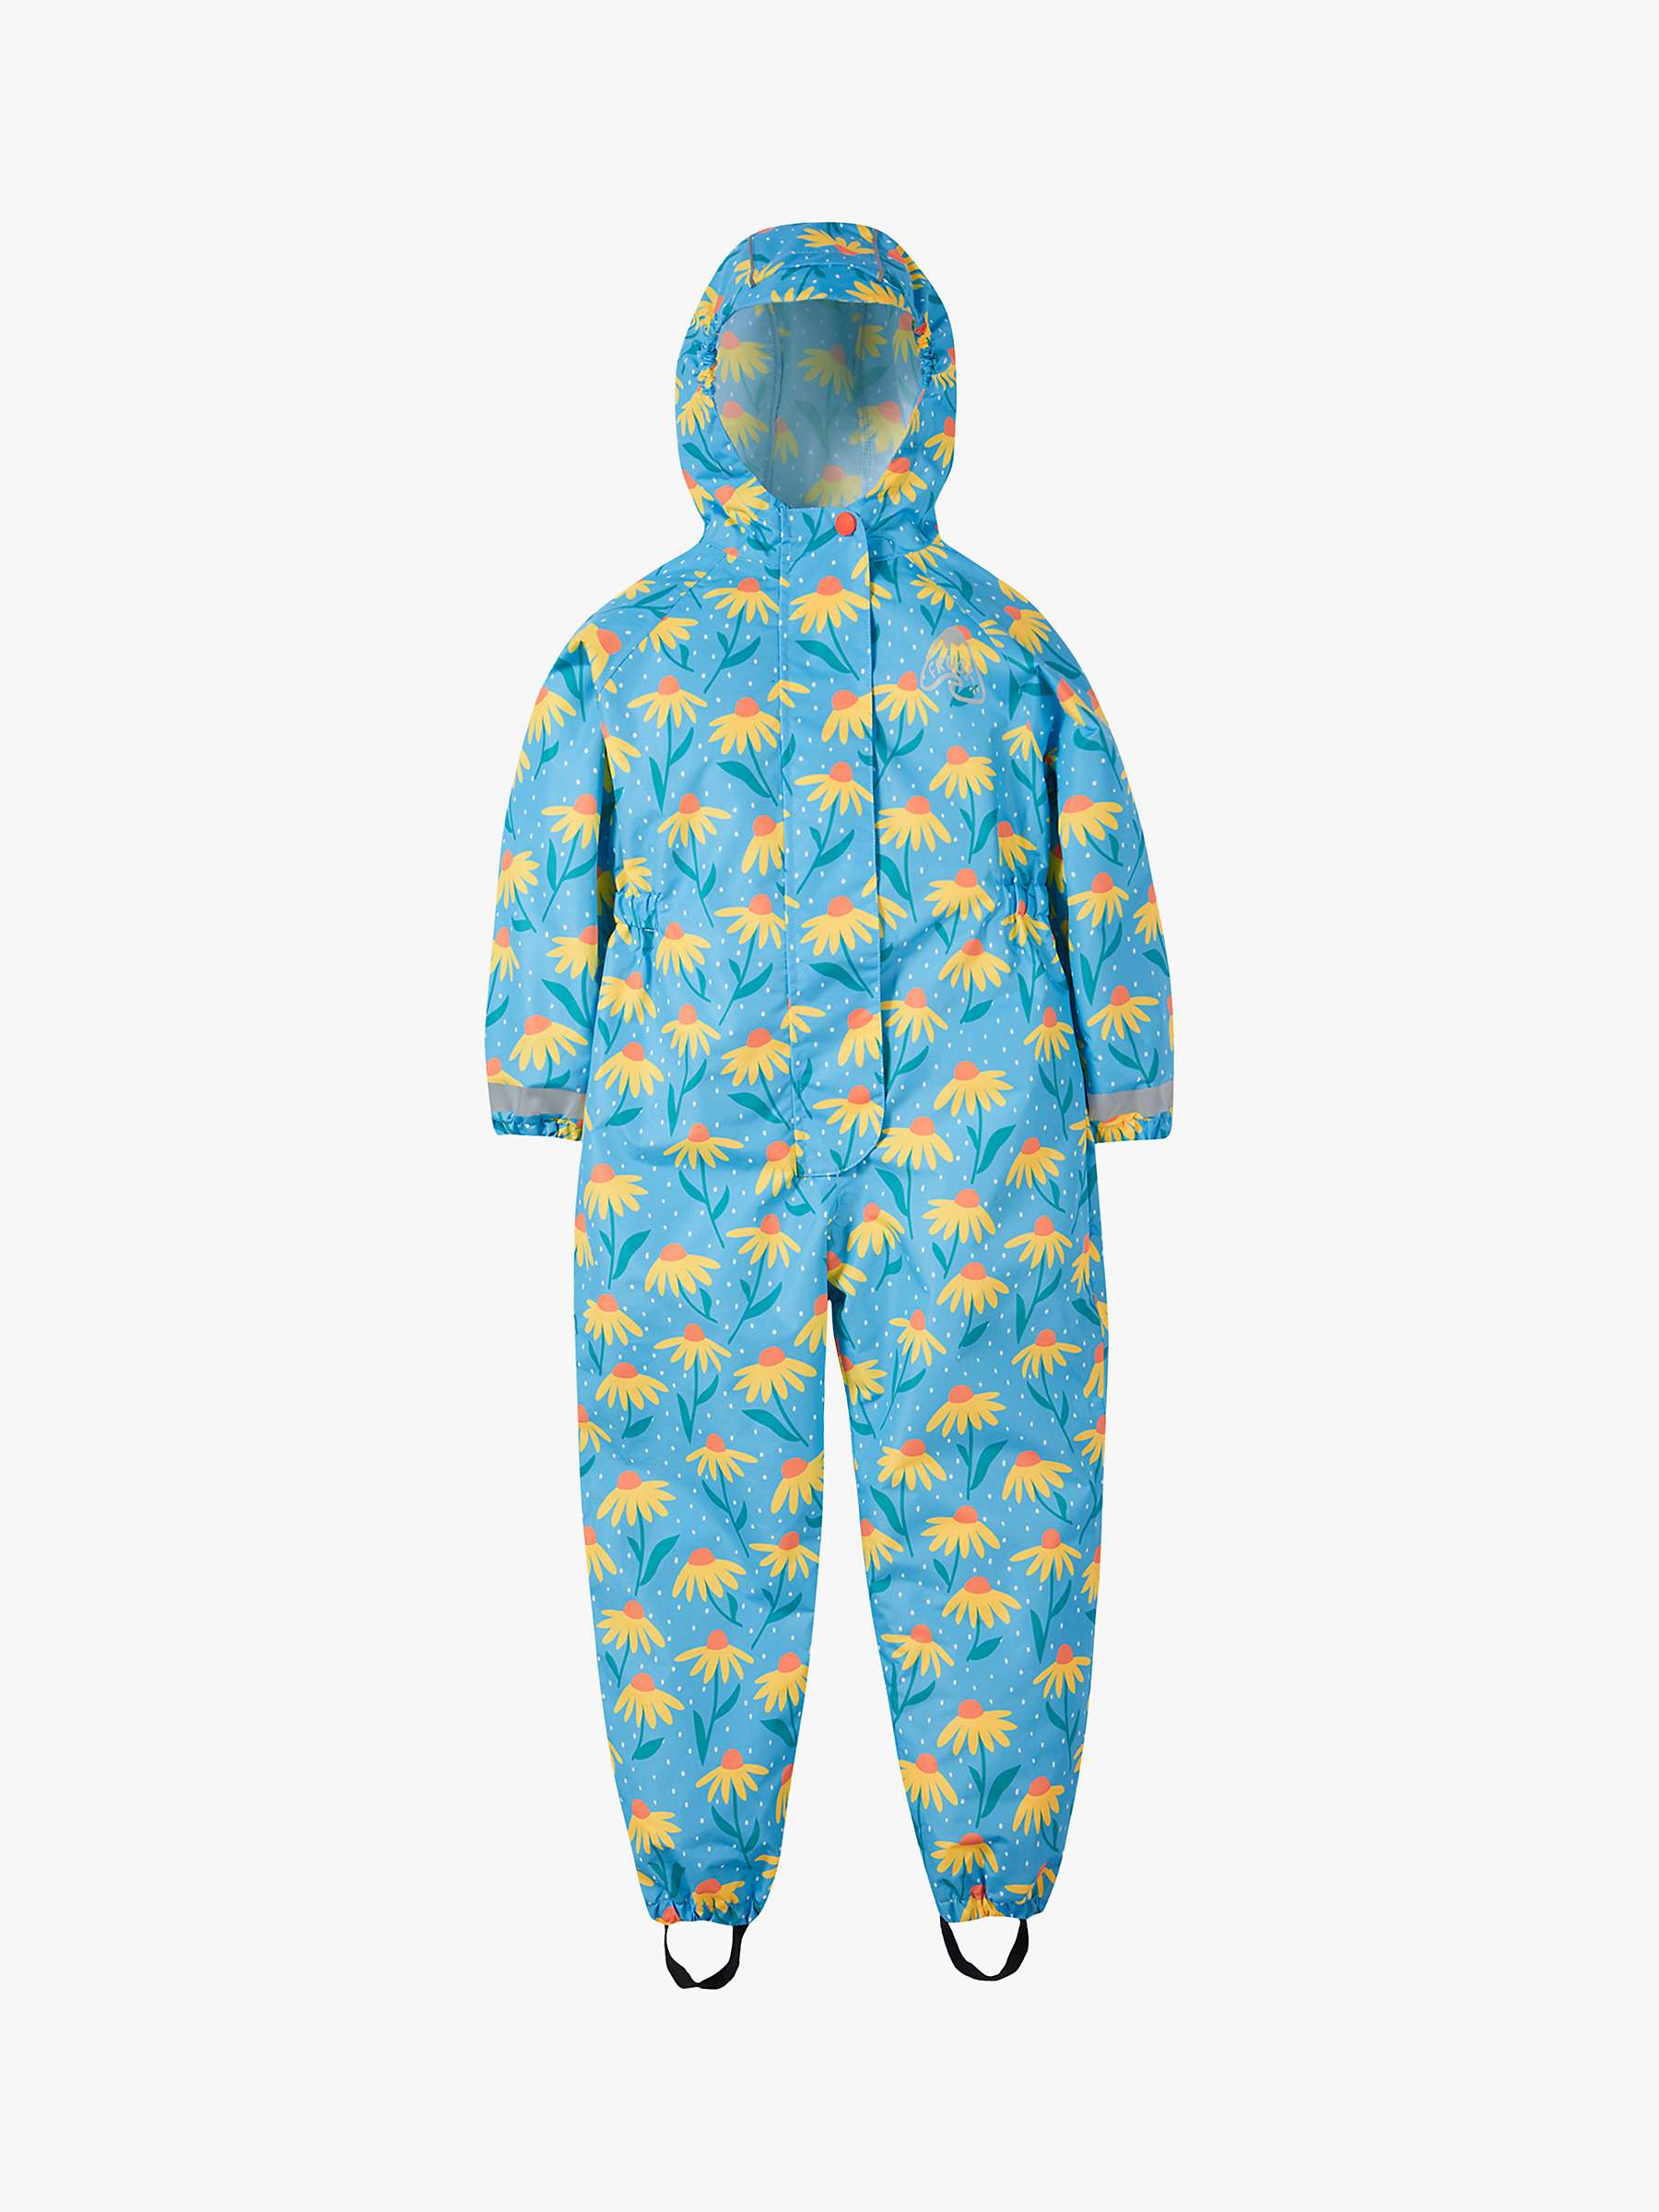 Buy Frugi Kids' Rain Or Shine Waterproof Hooded All-In-One Suit, Echinacea Online at johnlewis.com